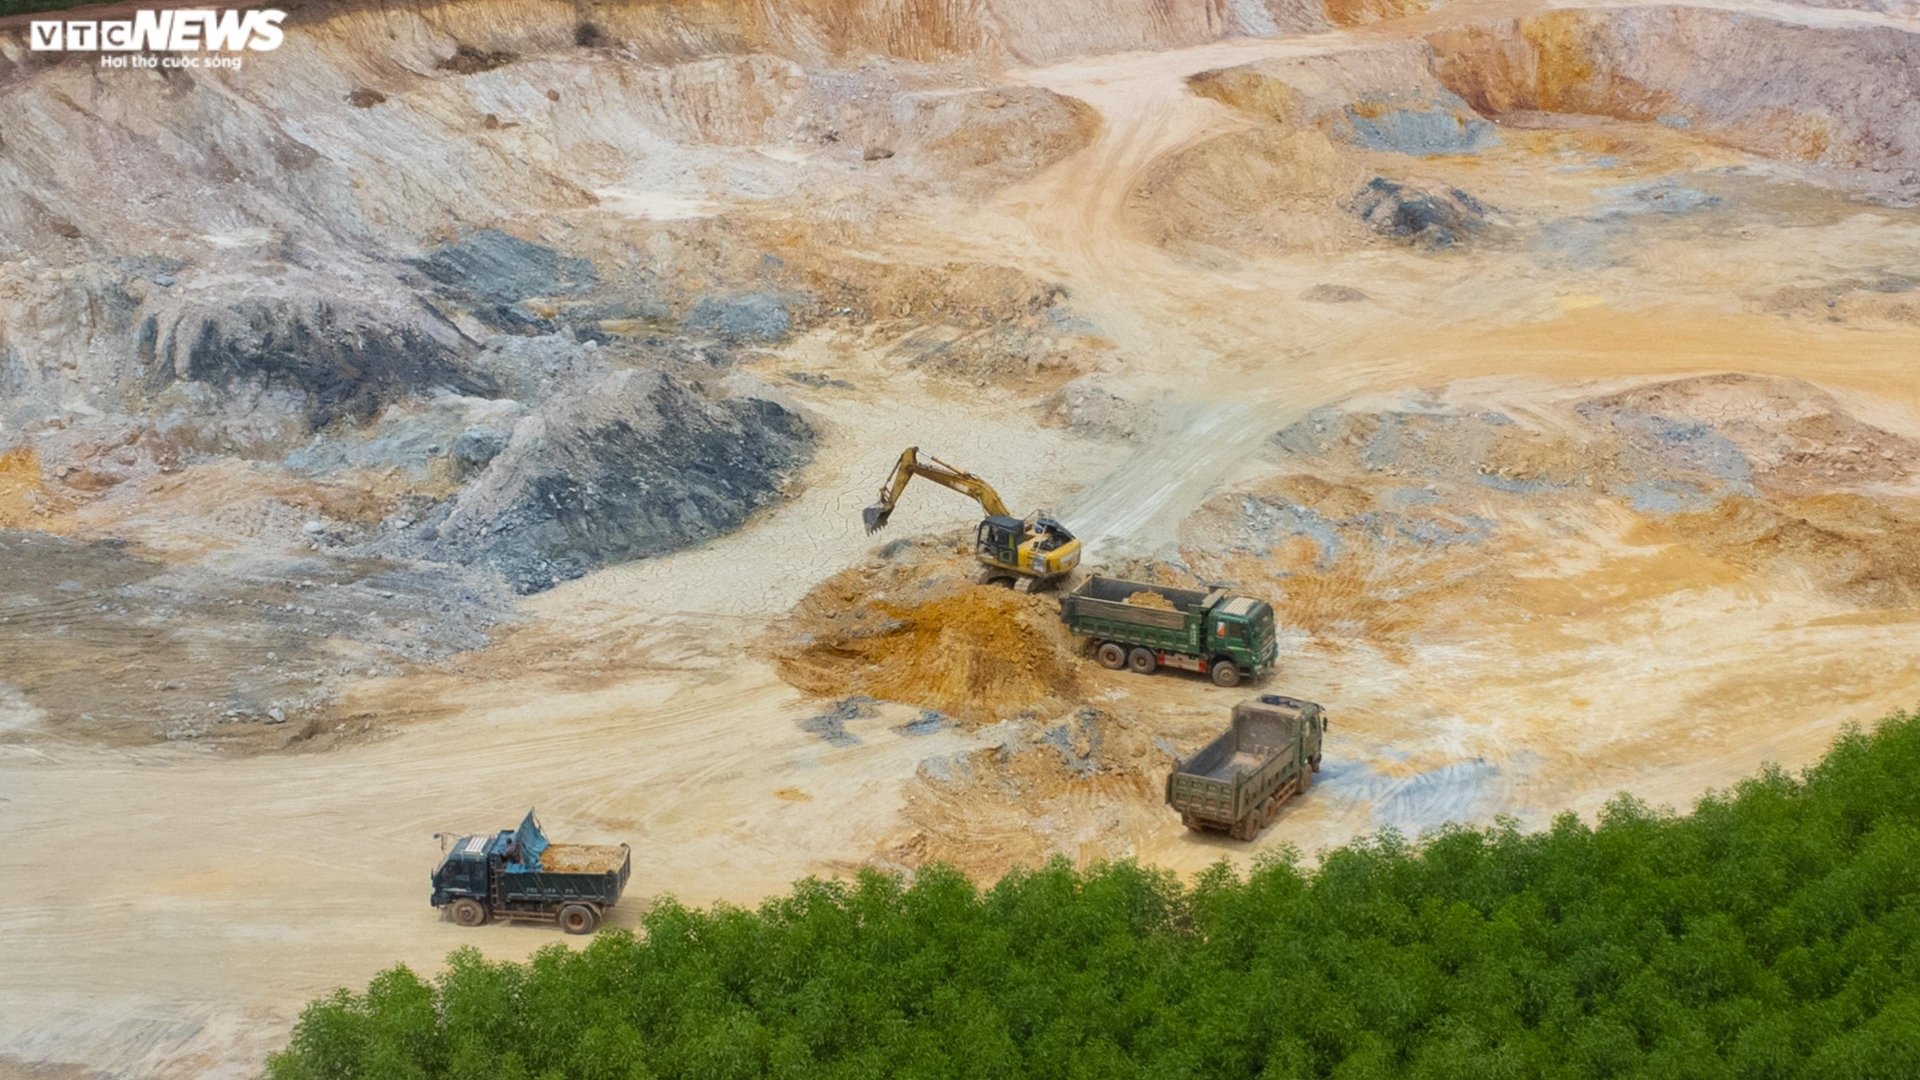 Thâm nhập đại công trường khai thác khoáng sản sai phép ở Thừa Thiên - Huế - Ảnh 6.